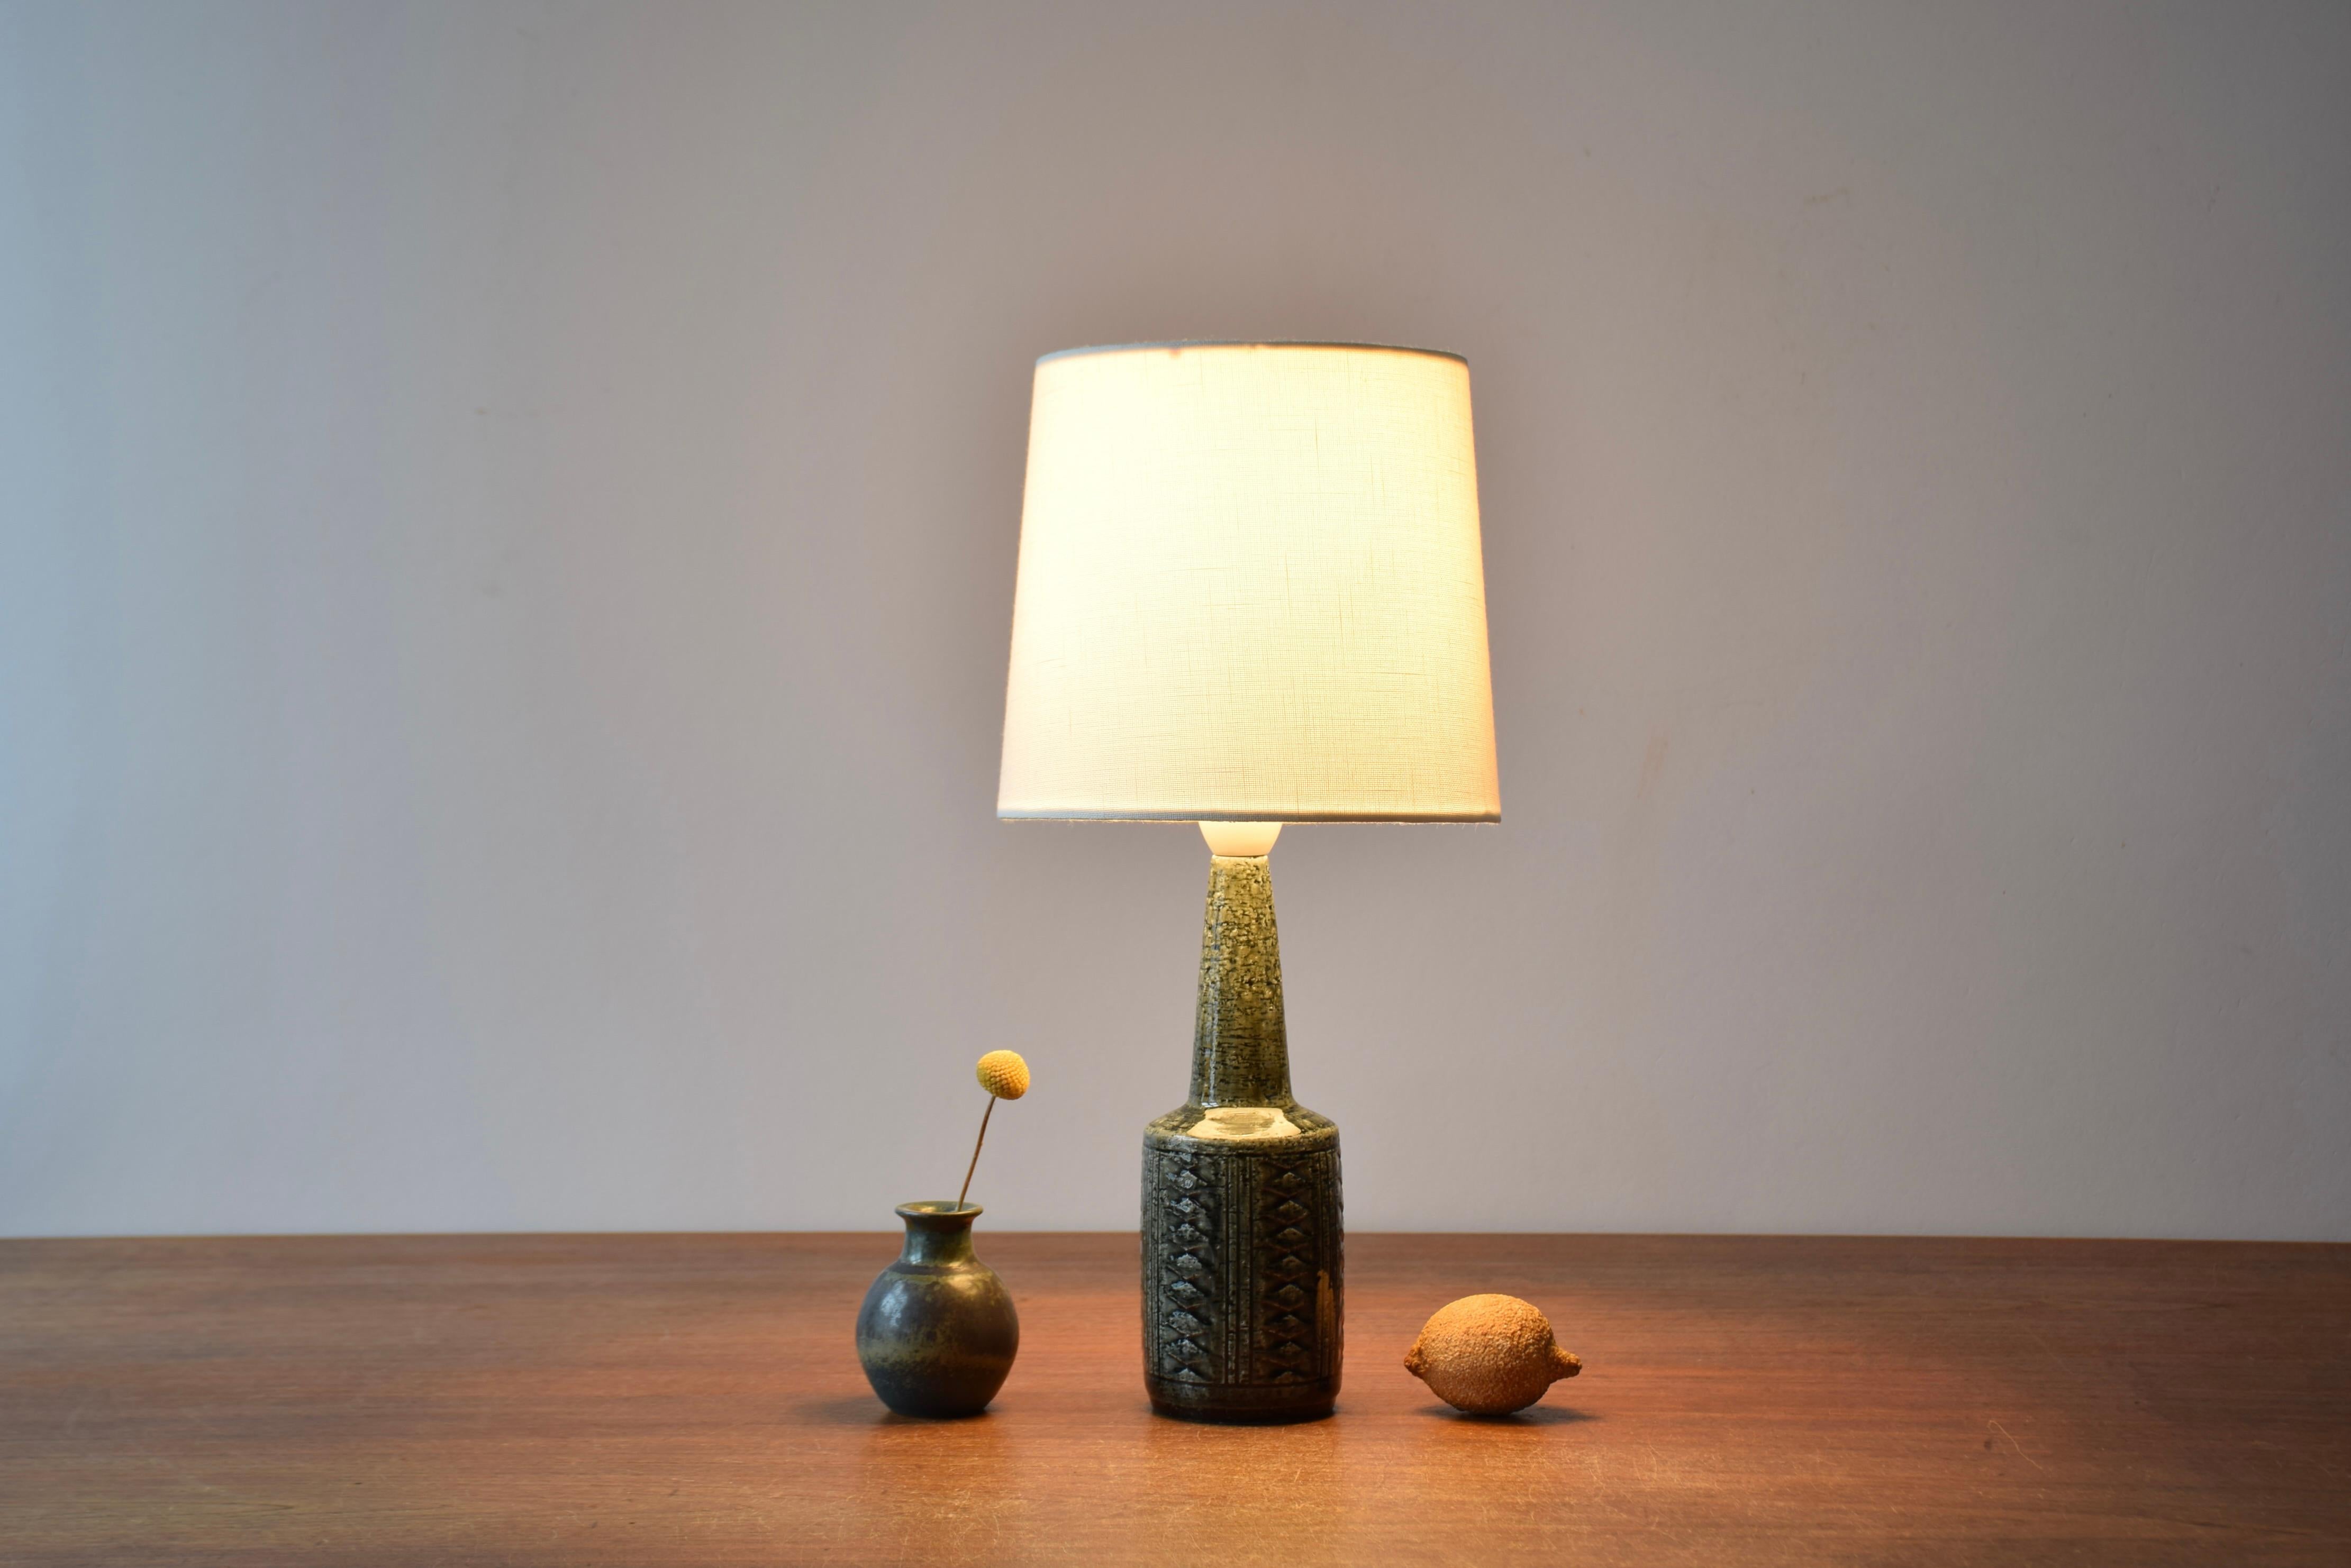 Lampe de table ou lampe de chevet danoise de petite taille du milieu du siècle dernier, provenant de l'atelier de céramique de Palshus. 

La lampe a été conçue par Per Linnemann-Schmidt et fabriquée vers les années 1960.
Elle est fabriquée avec de